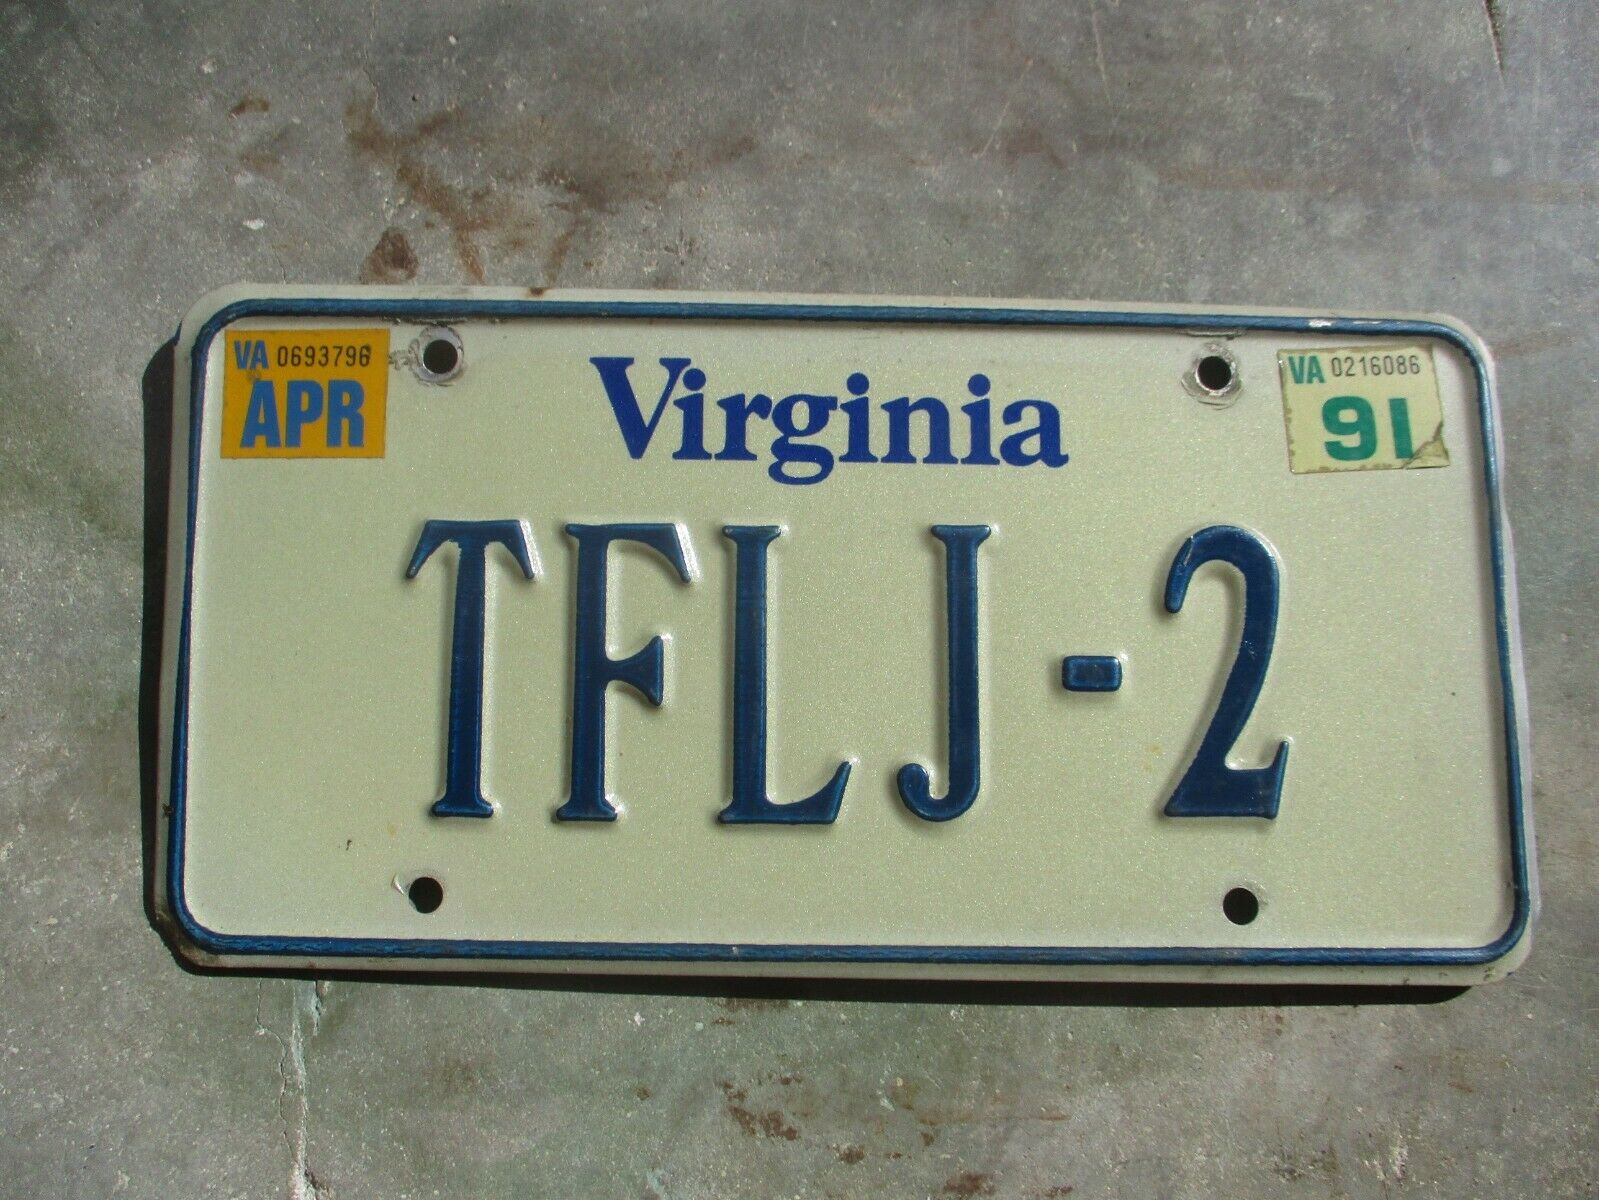 Virginia 1991 Vanity License Plate   #  Tflj - 2